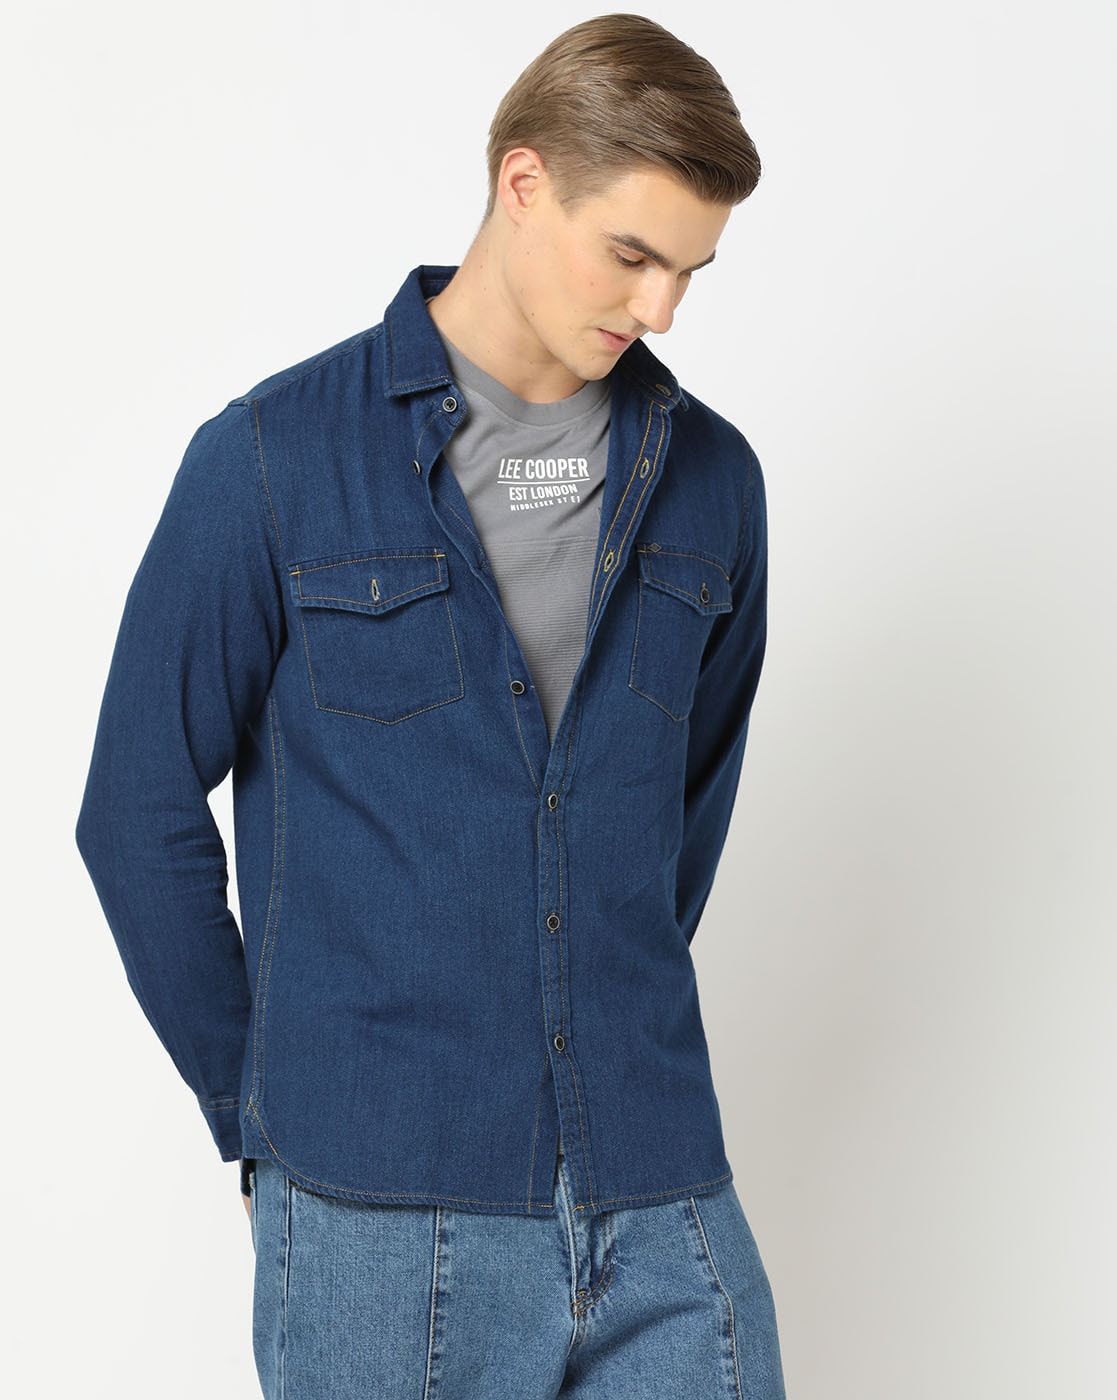 LEE 101+ BLUE Denim Chambray Shirt Slim Button Down Colorblock Sanforized  Size M | eBay